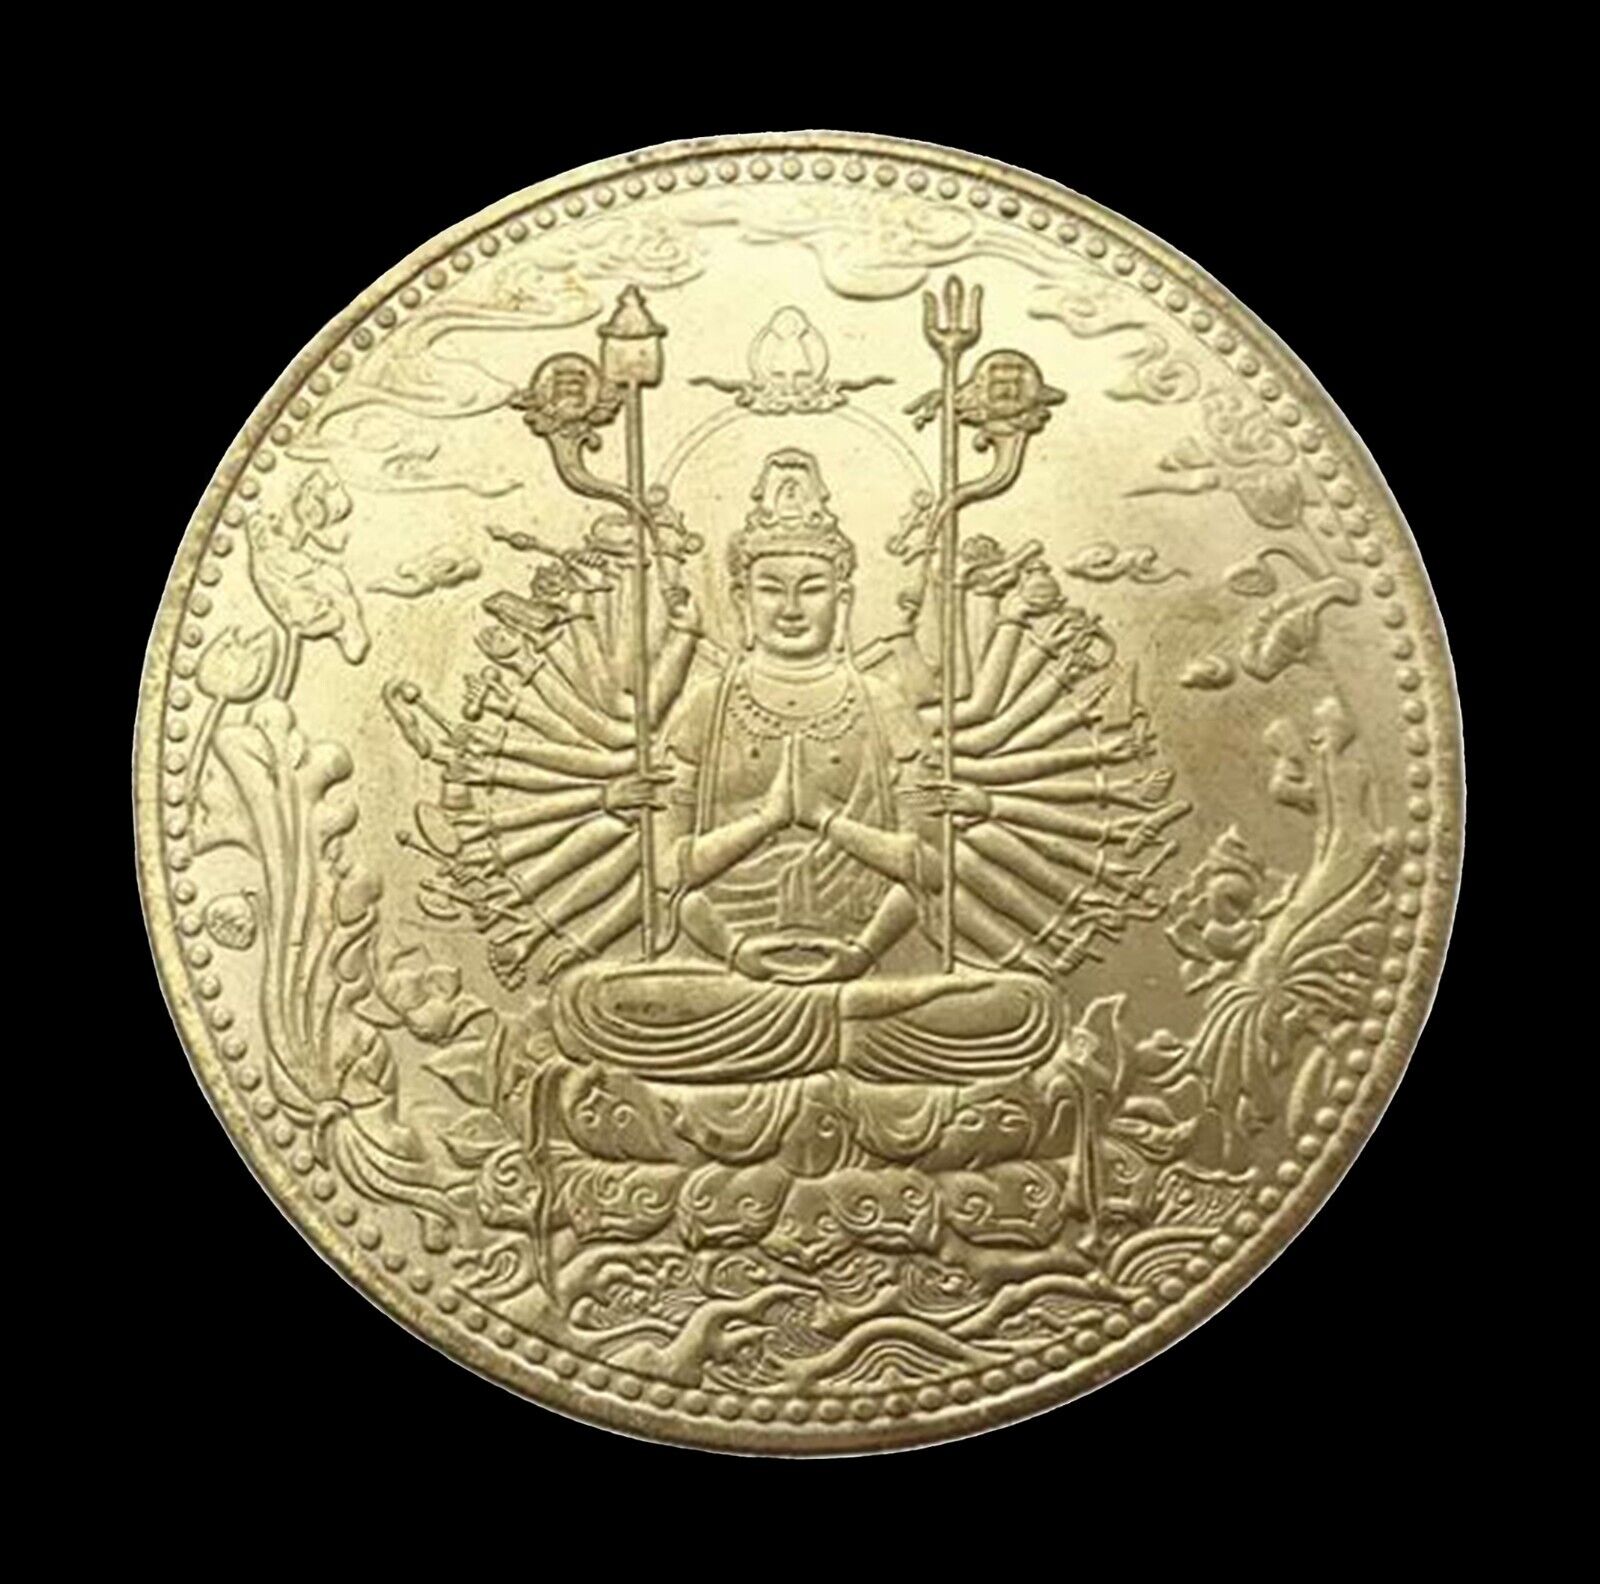 1000 Hand Buddha-Gold Alloy Coin-Avalokiteshvara-Guanyin-Heart Sutra-Bodhisattva